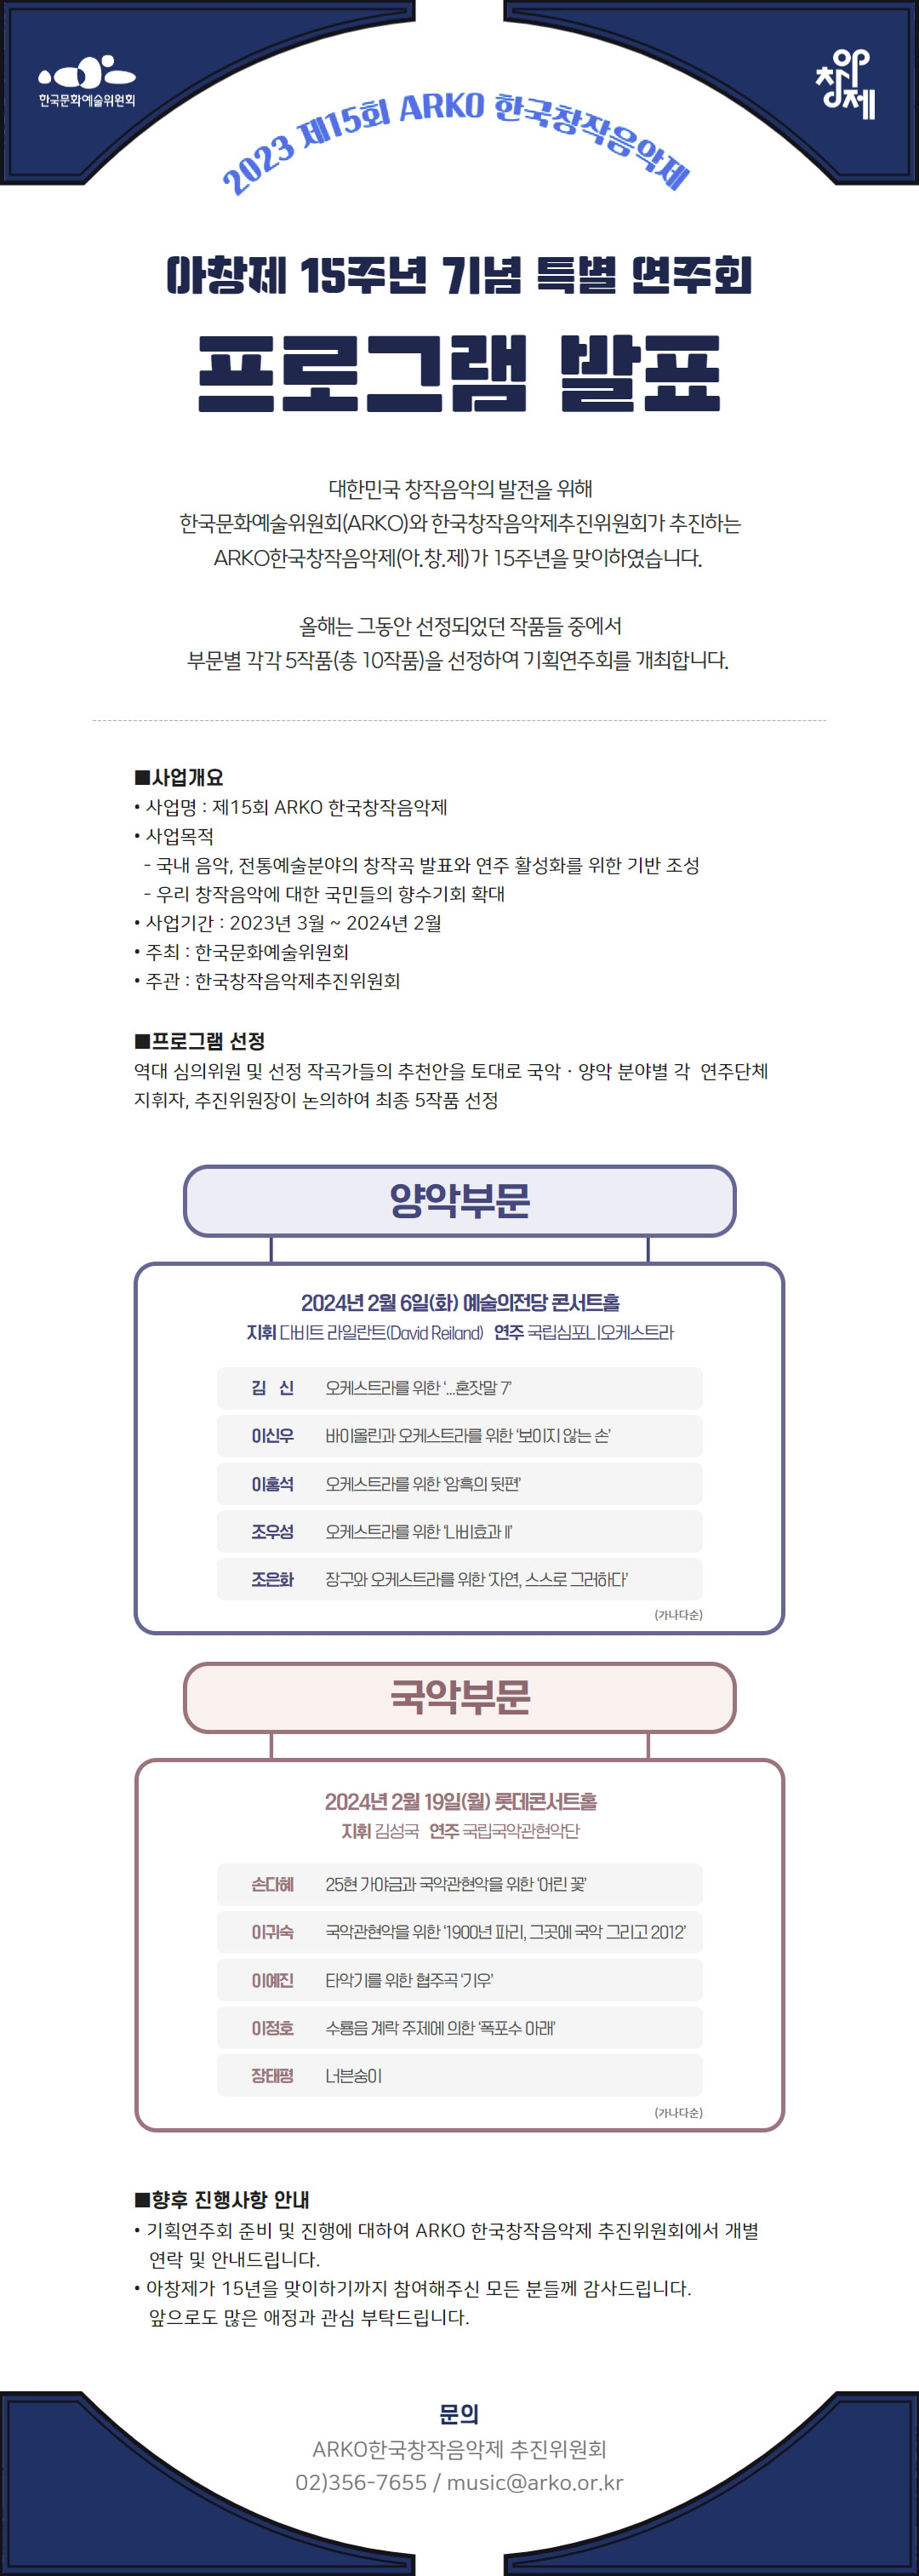 제15회 ARKO한국창작음악제 아창제 15주년 기념 특별 연주회 프로그램 발표(자세한 내용 아래 참조)